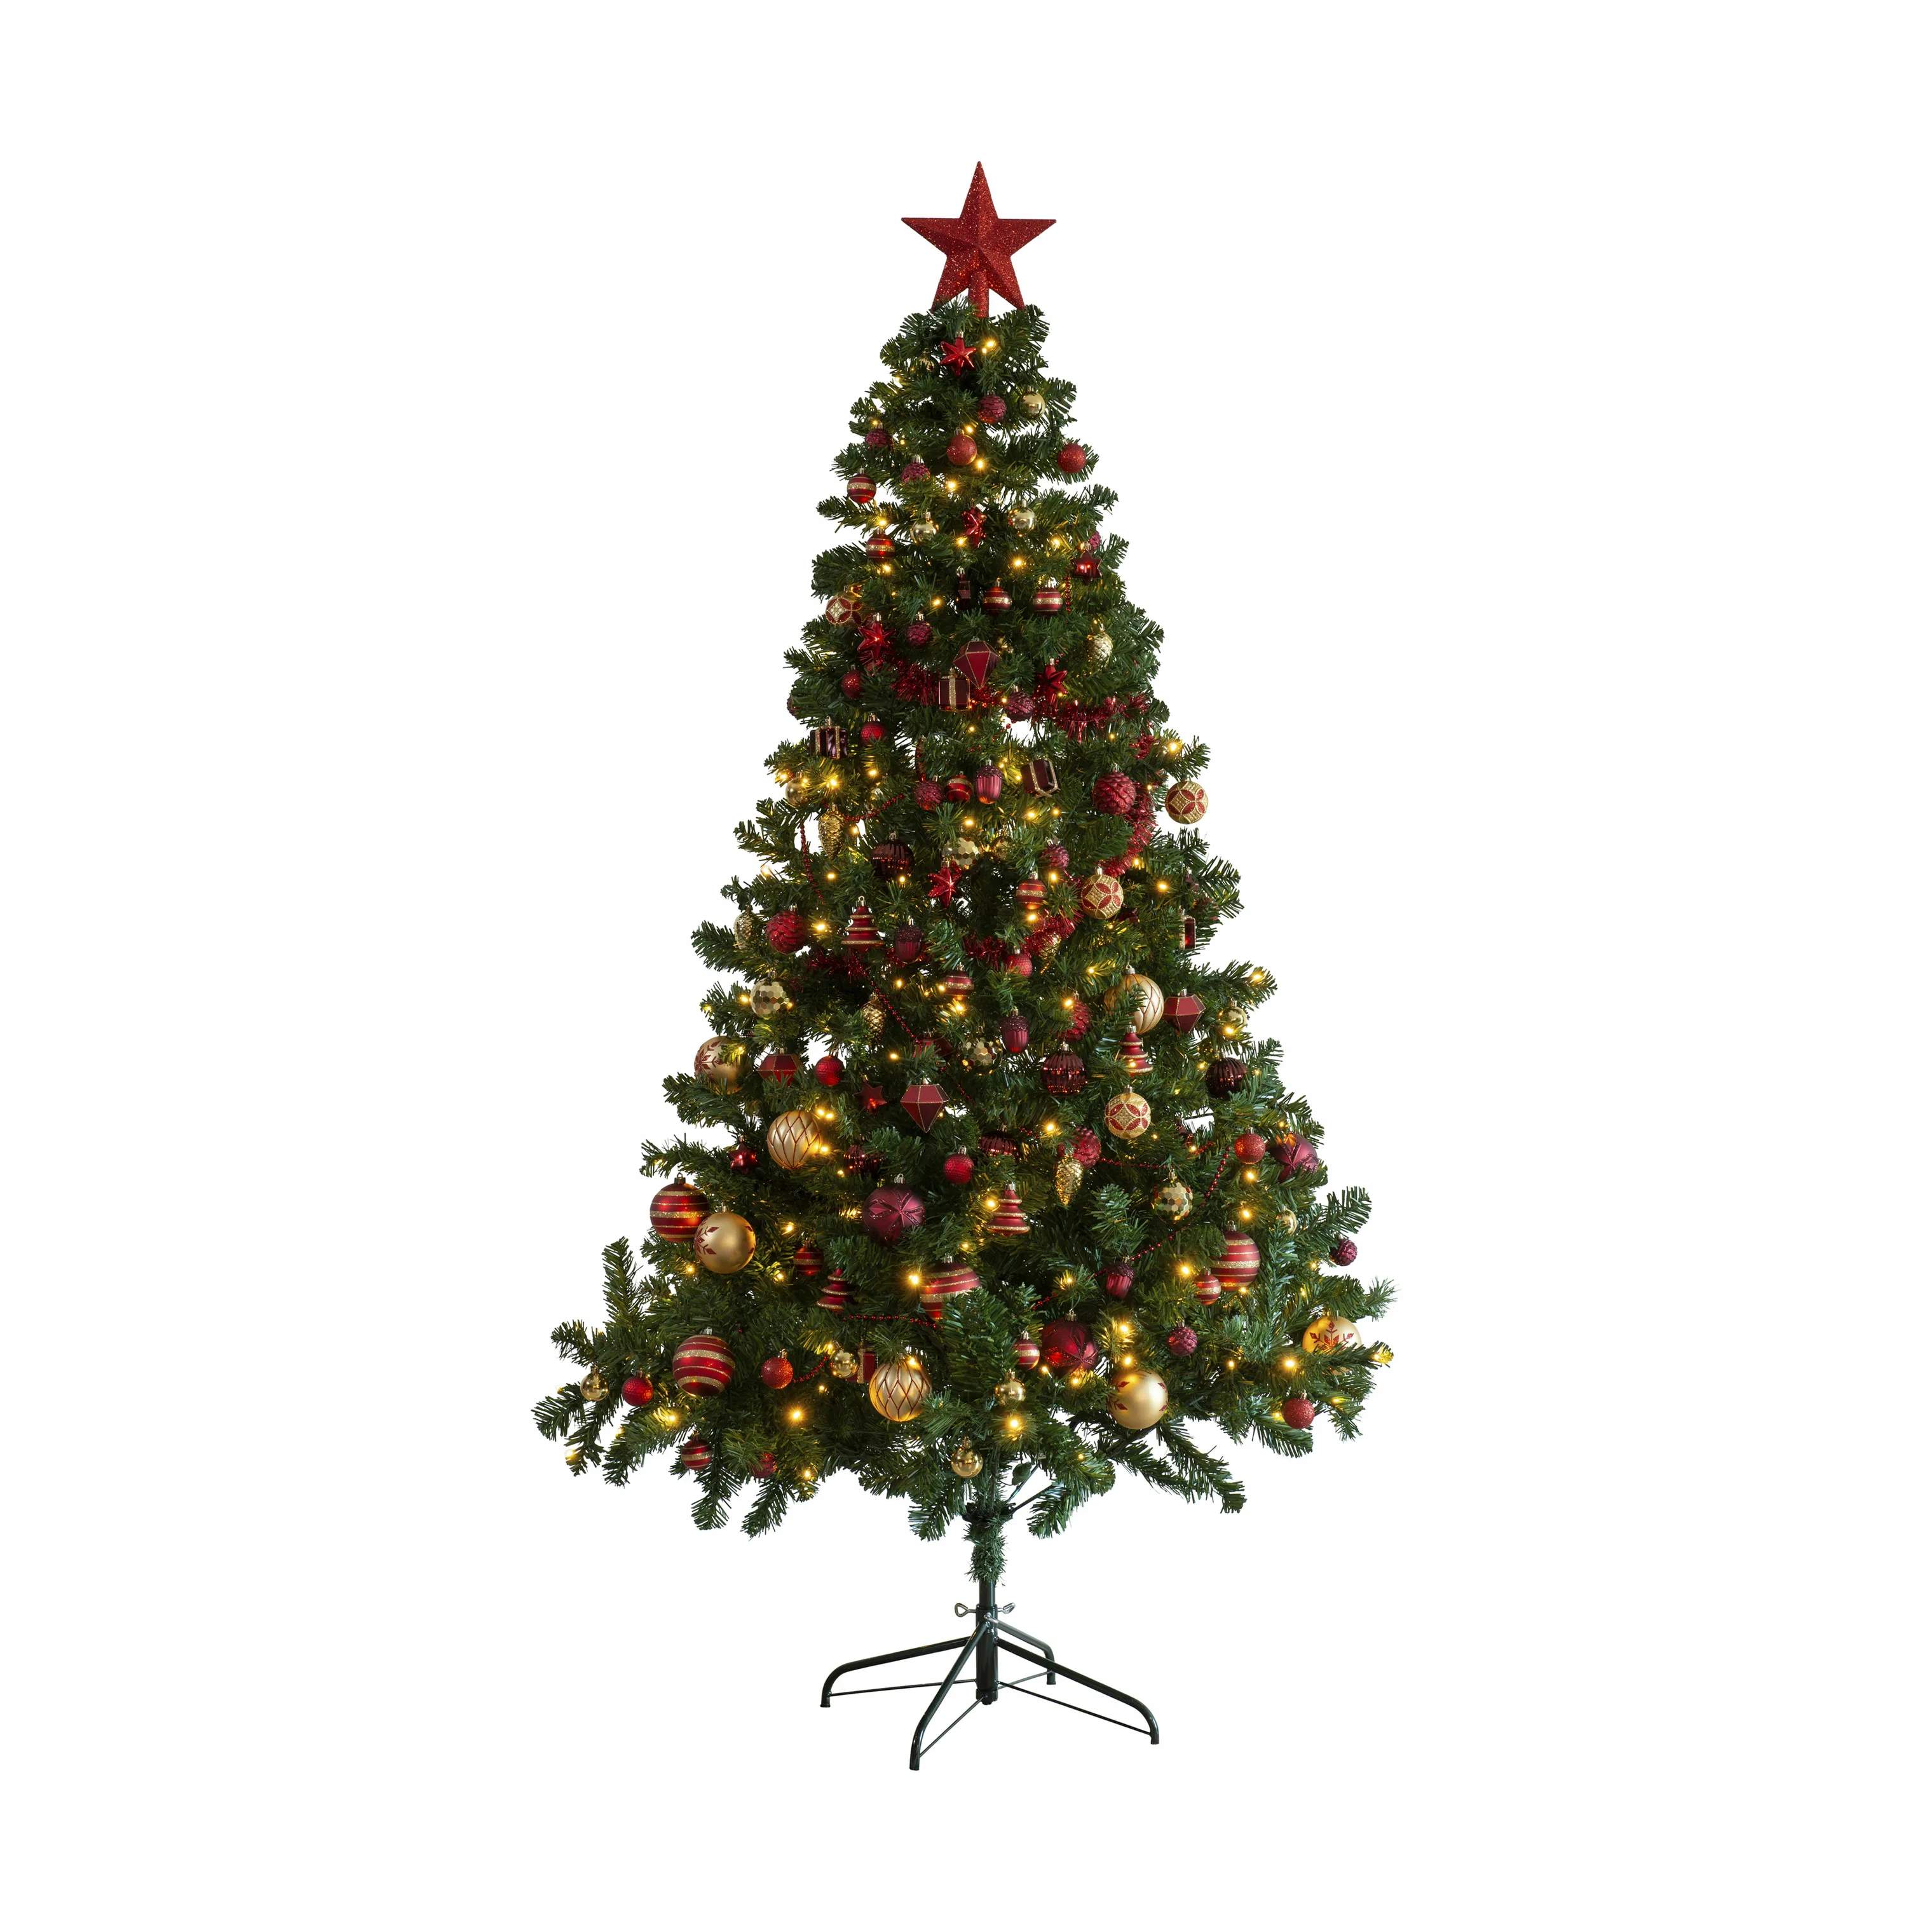 Casa Christmas juletræer Imperial Pine Kunstigt Juletræ m. pynt